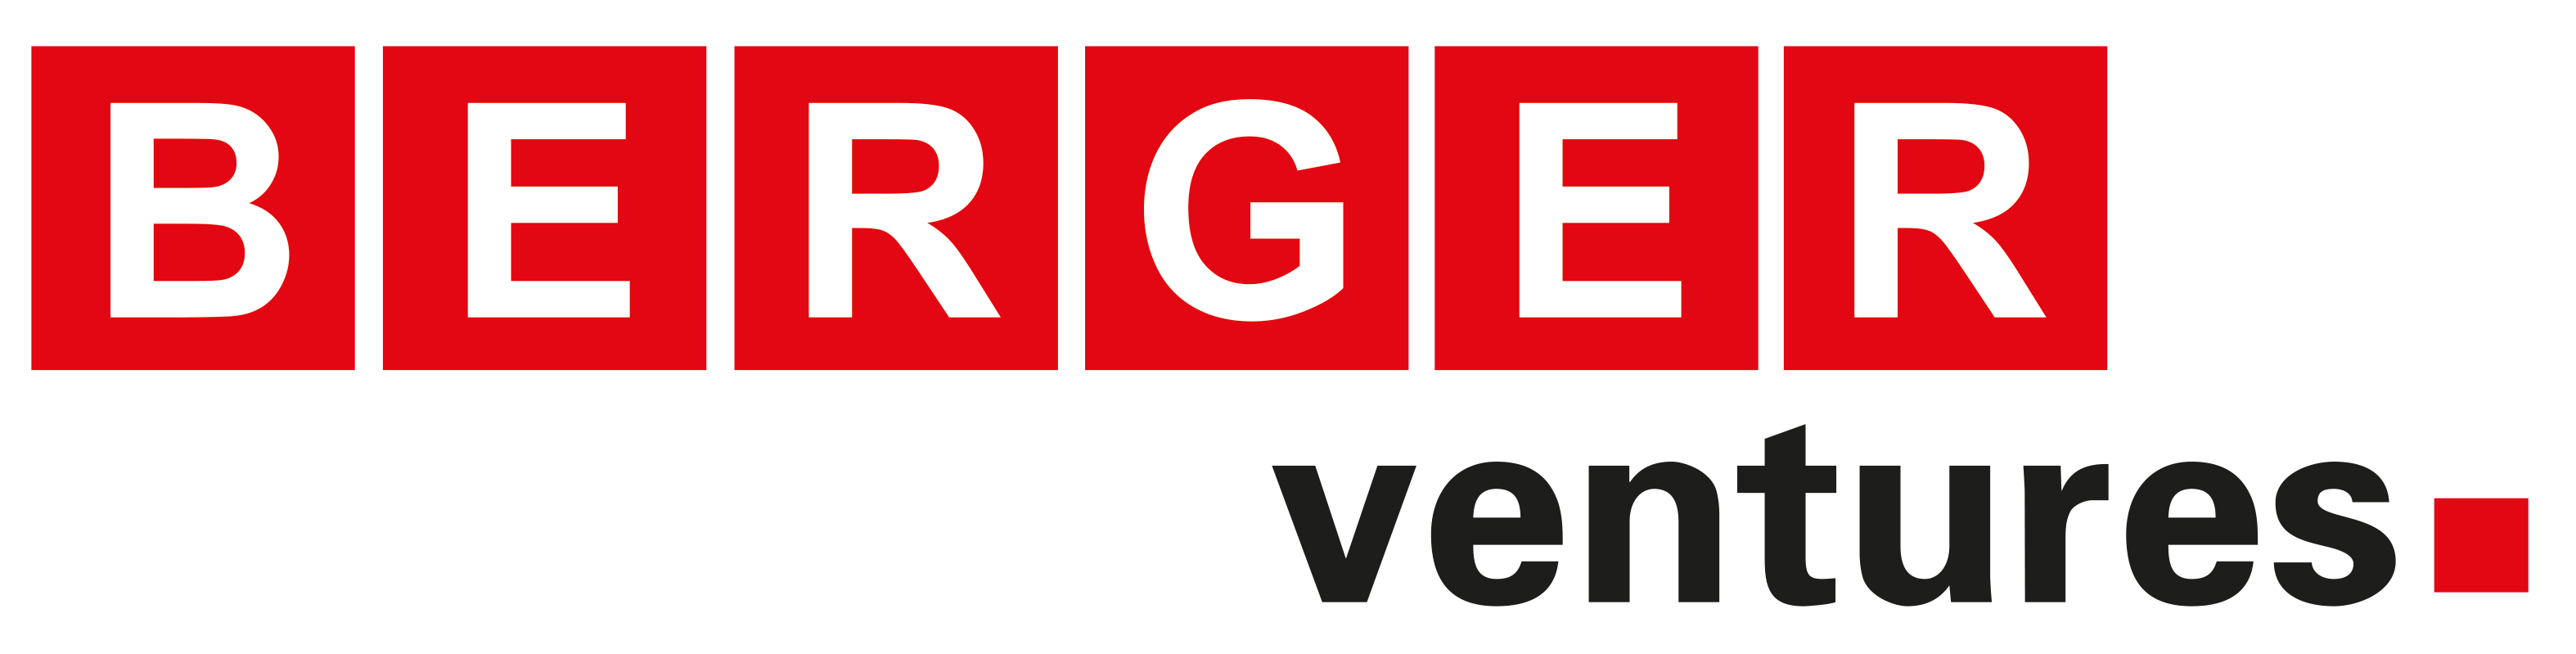 Berger Ventures